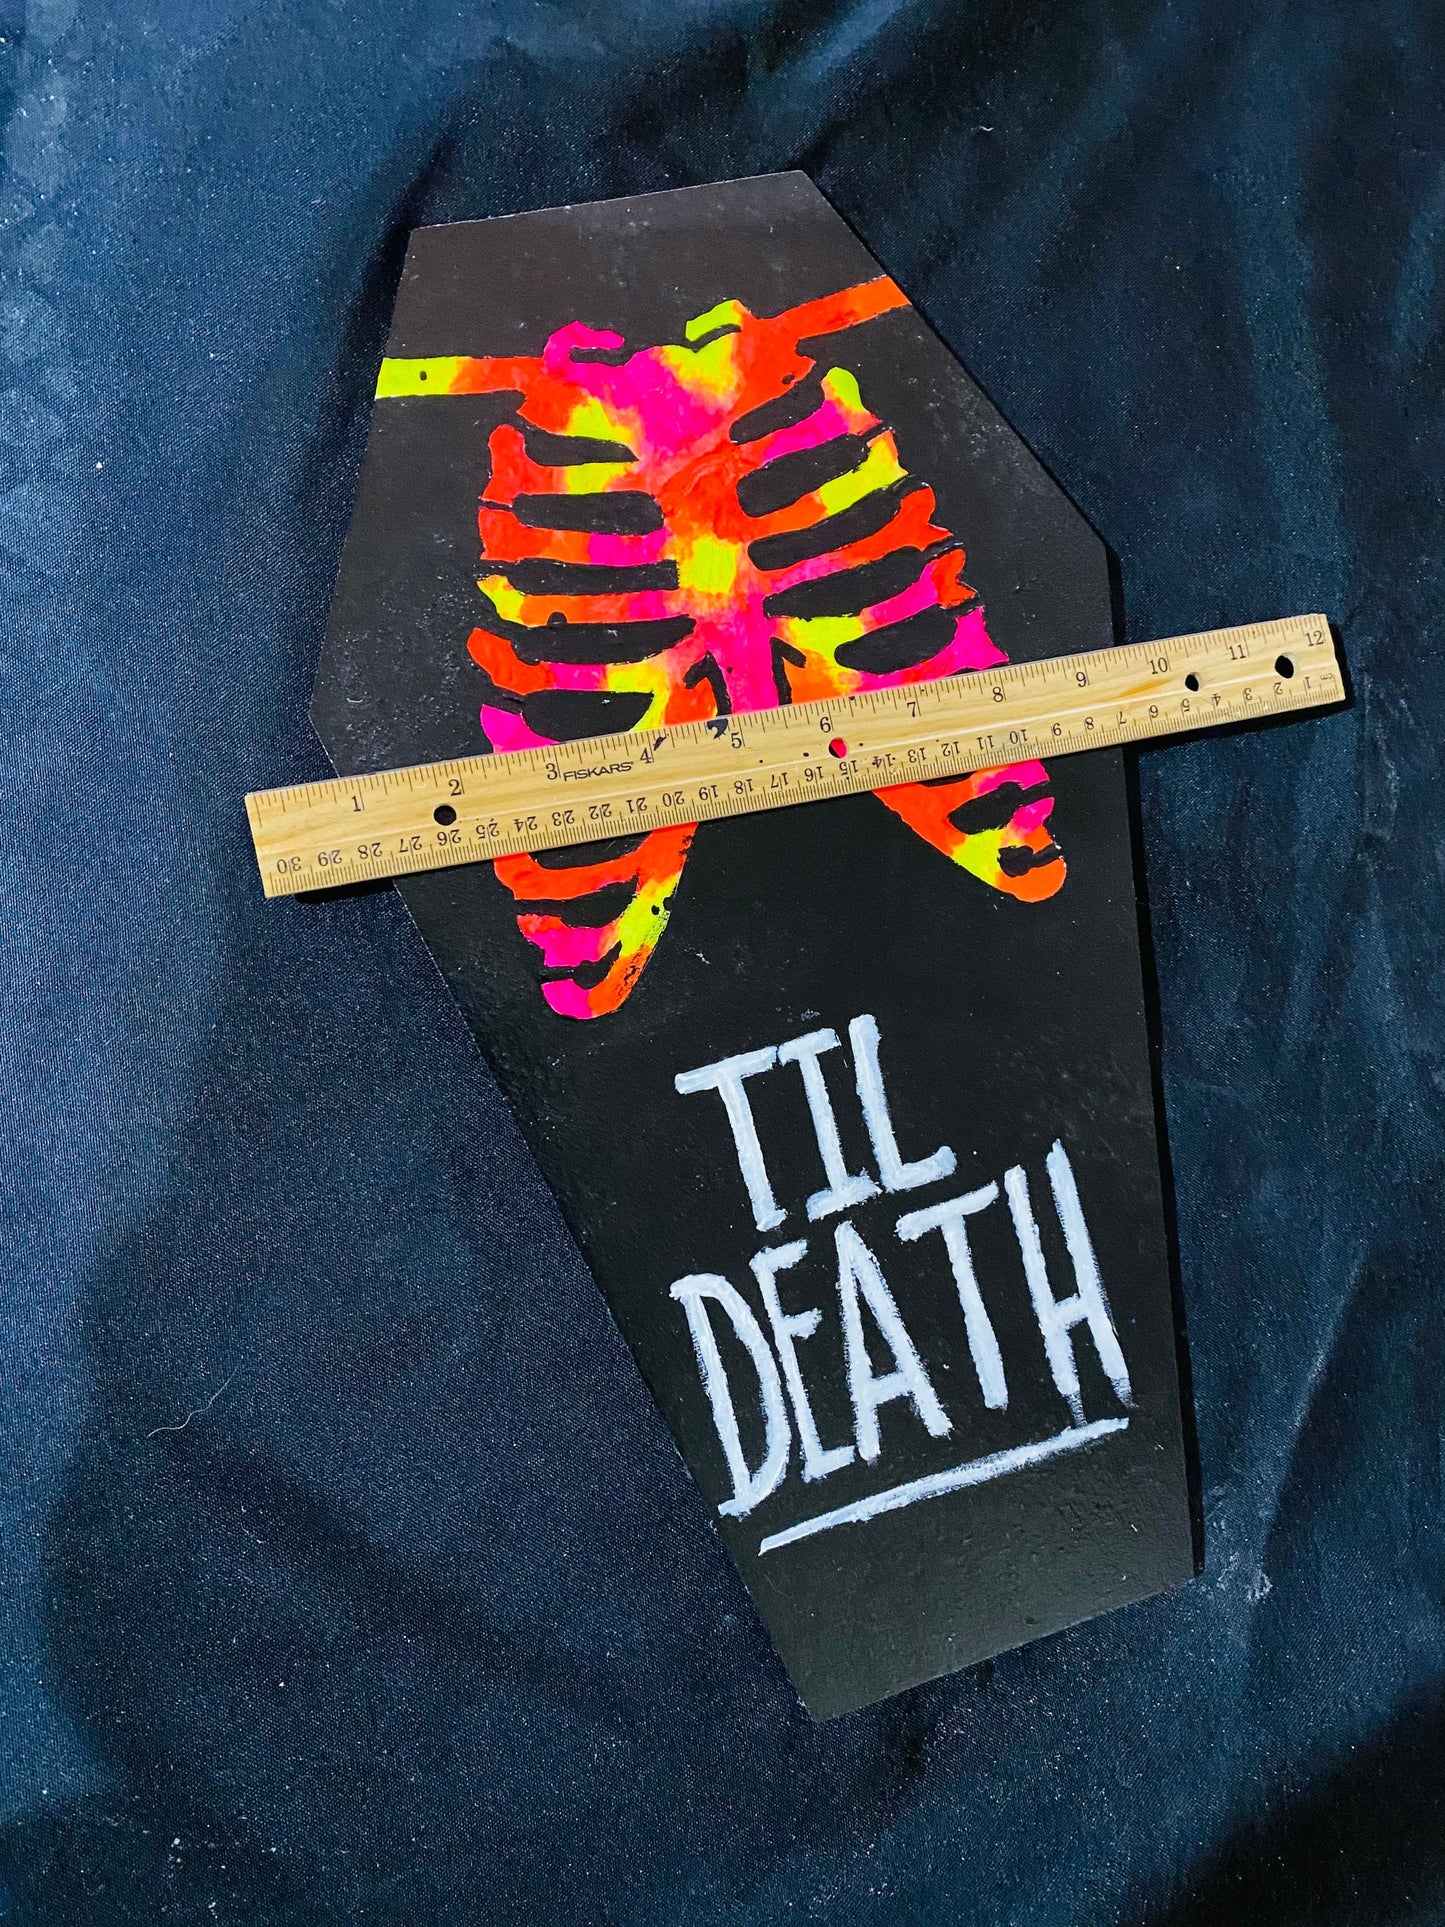 Coffin shaped “til death” art